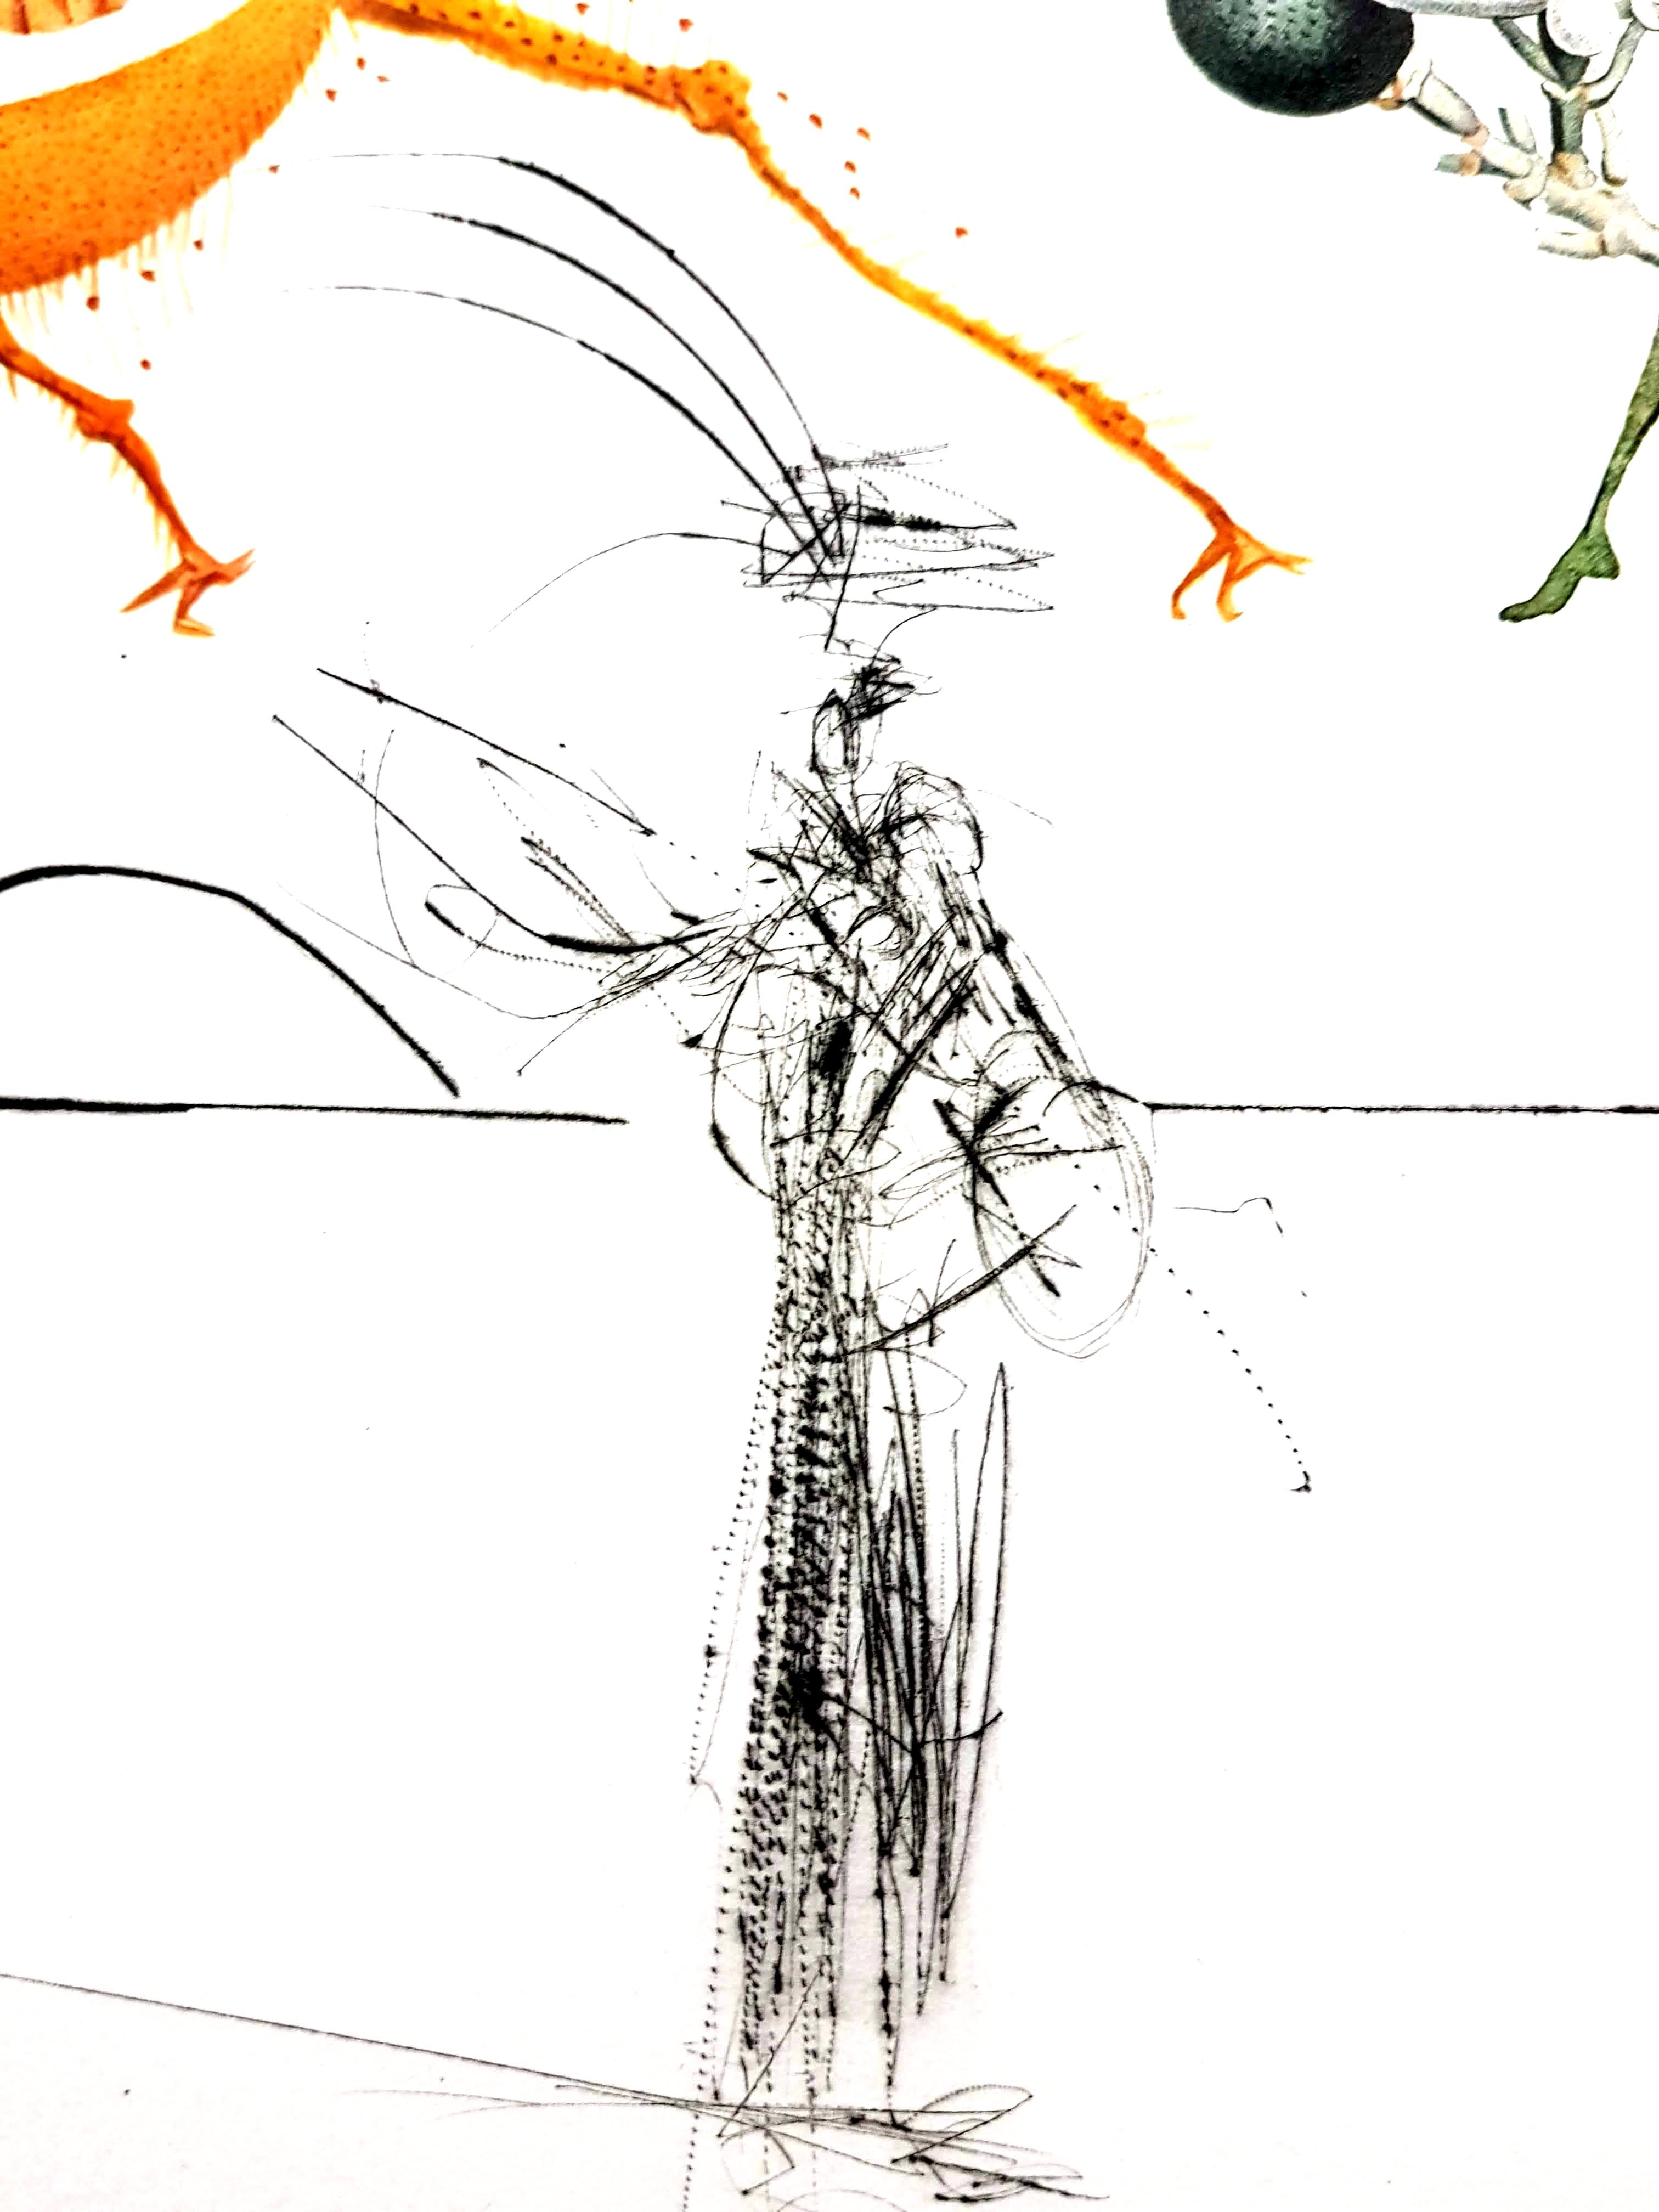 Salvador Dali - Erotische Pampelmuse - Original handsignierte Lithographie
1969
Abmessungen: S. 57 x 37 cm
Blatt: 75 x 56 cm 
Handsigniert, EA (Epreuve d'Artiste)
Ausgezeichneter Condit
Referenz: Feld 69-11 (Seite 54)